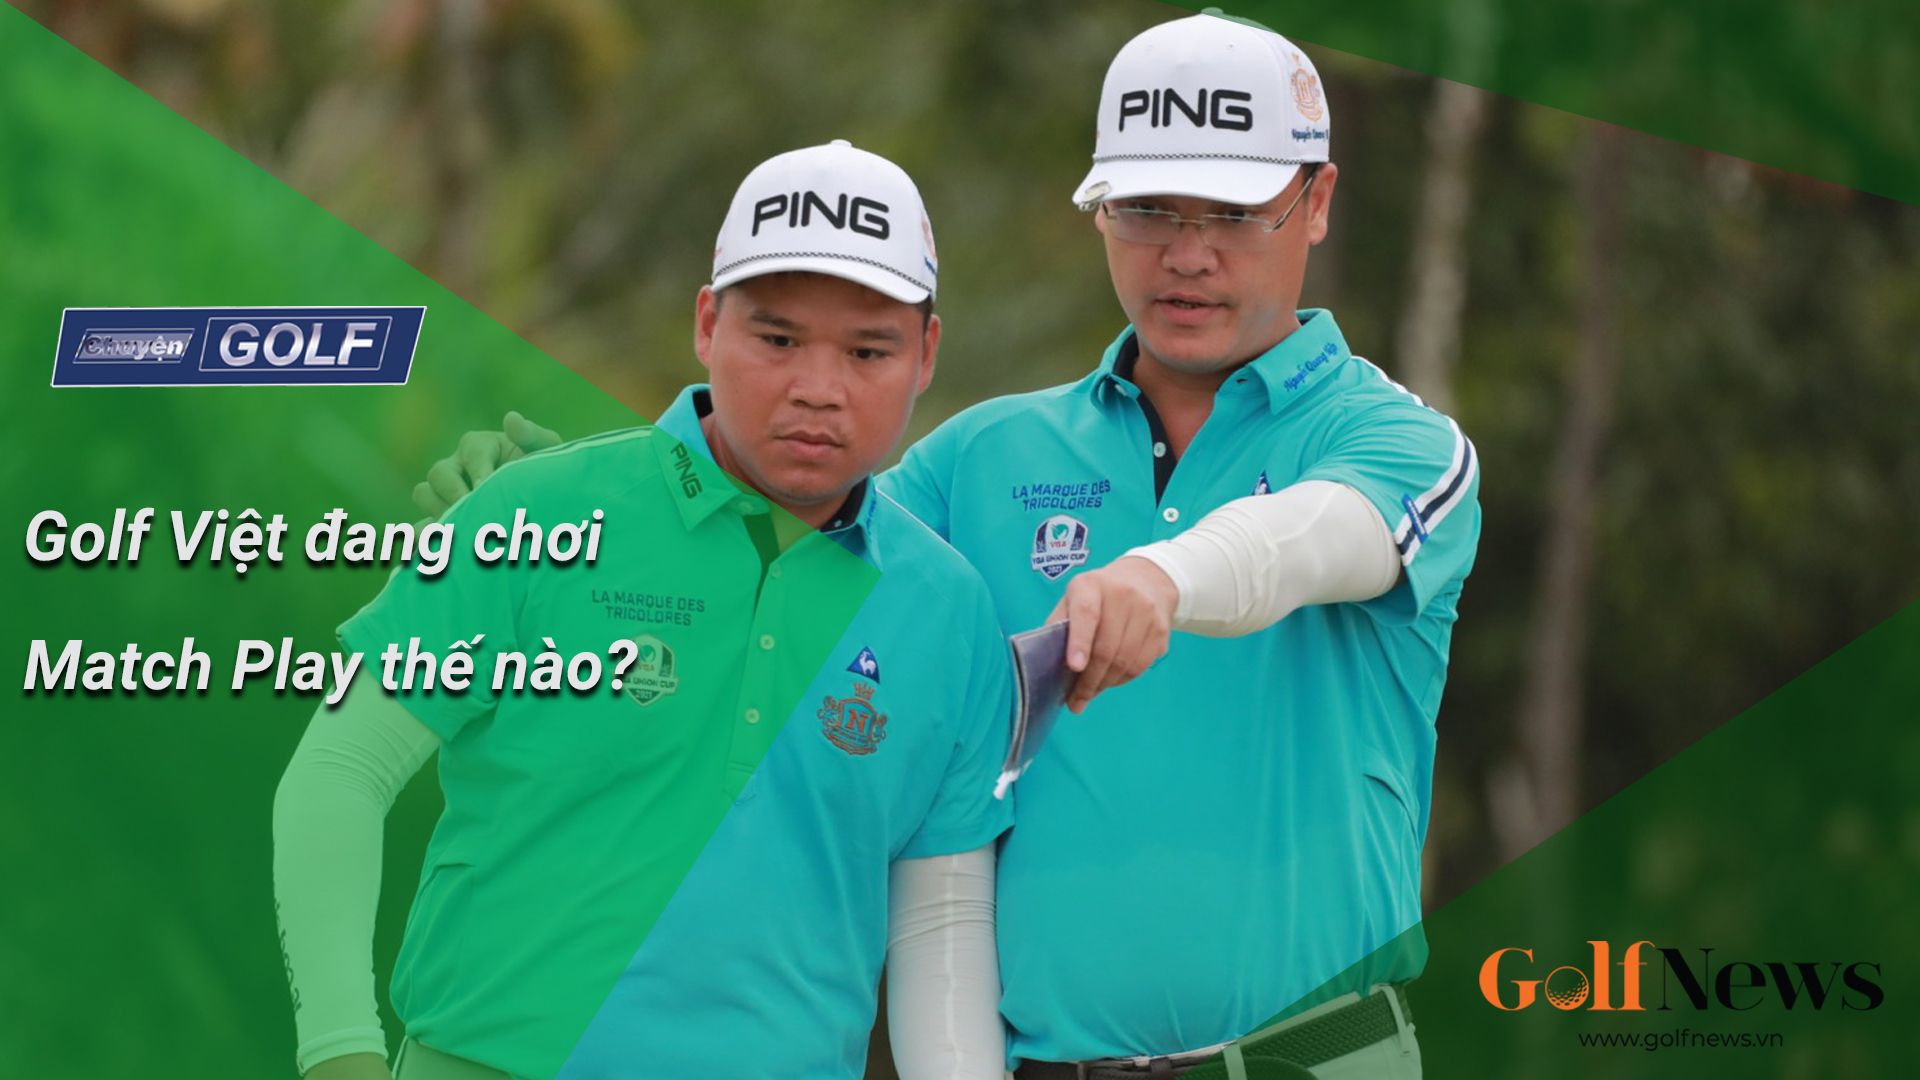 Chuyện golf 81: Golf Việt chơi Match Play thế nào?